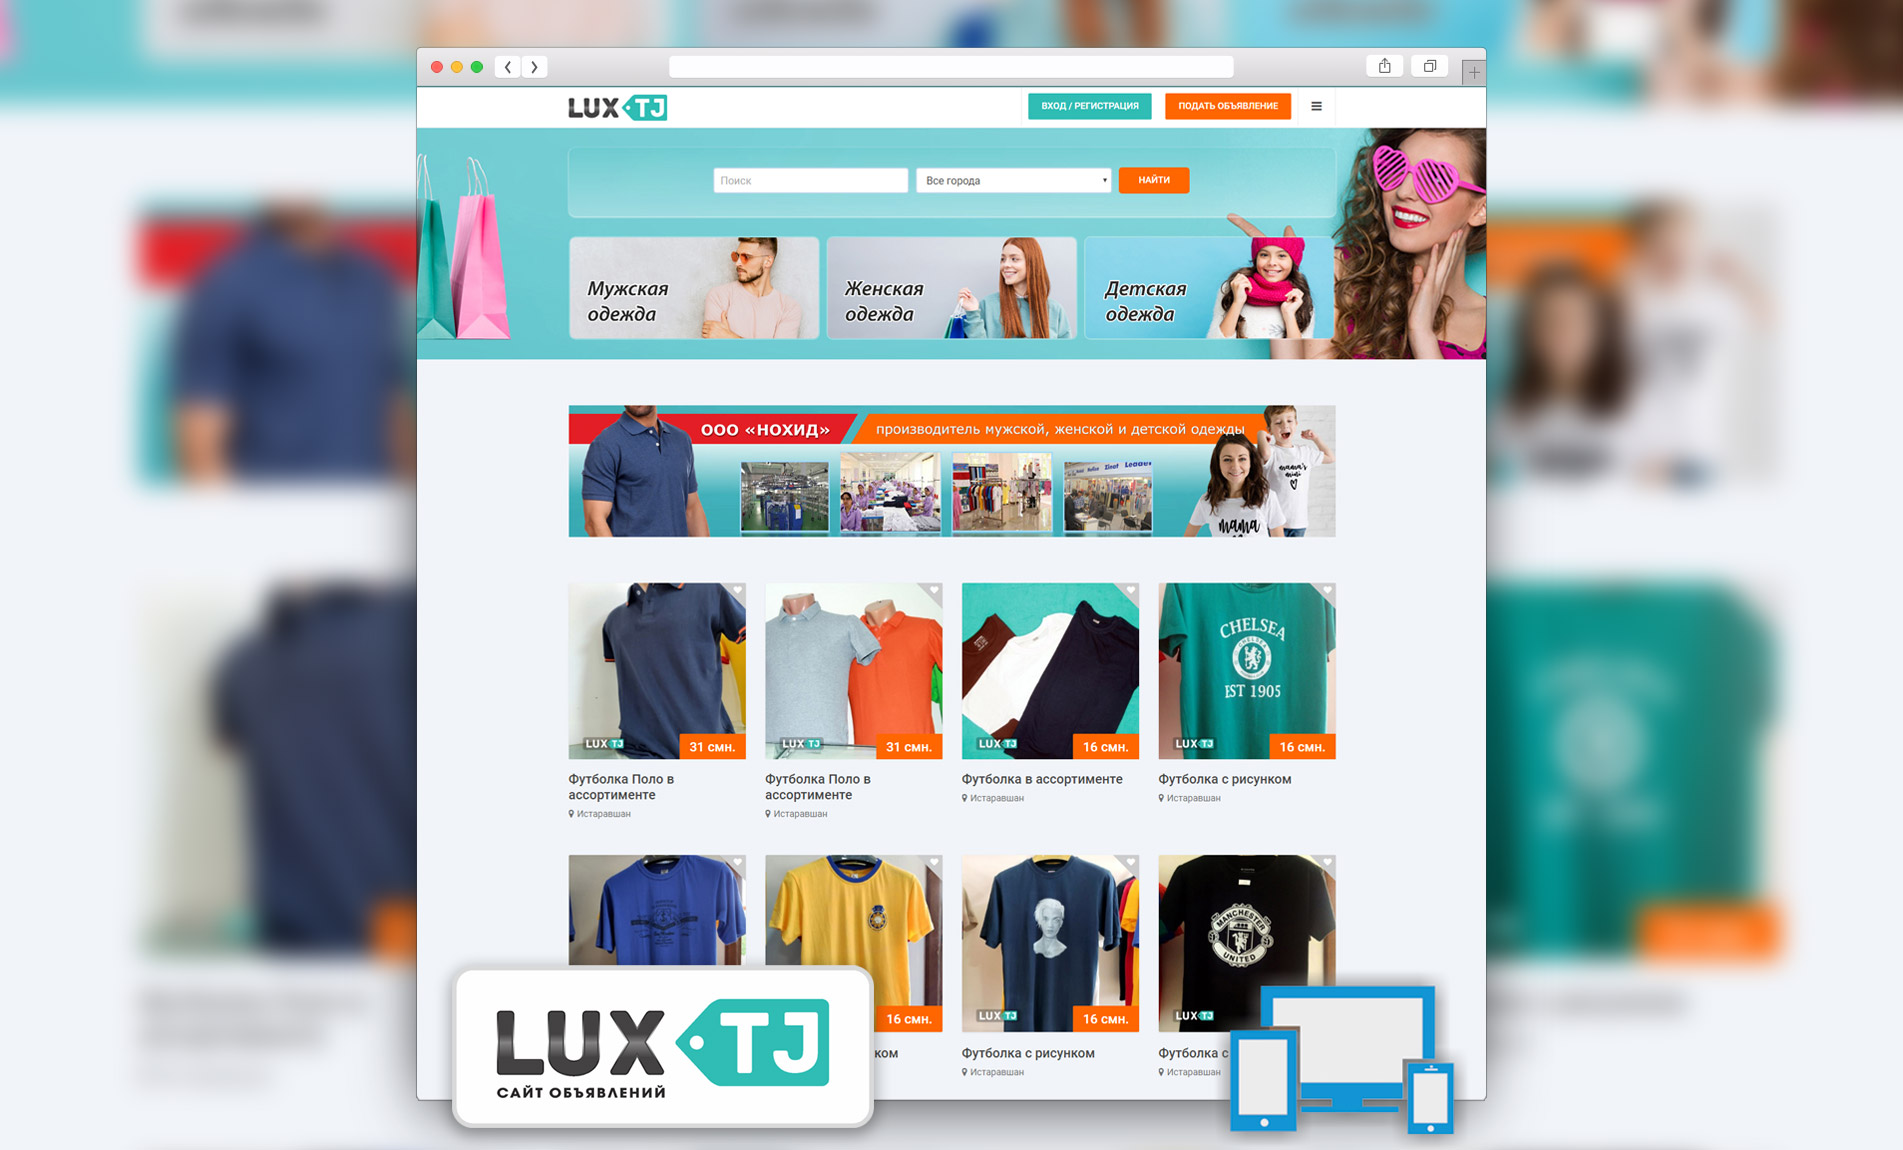 Lux.Tj - сайт объявлений одежды и аксессуаров